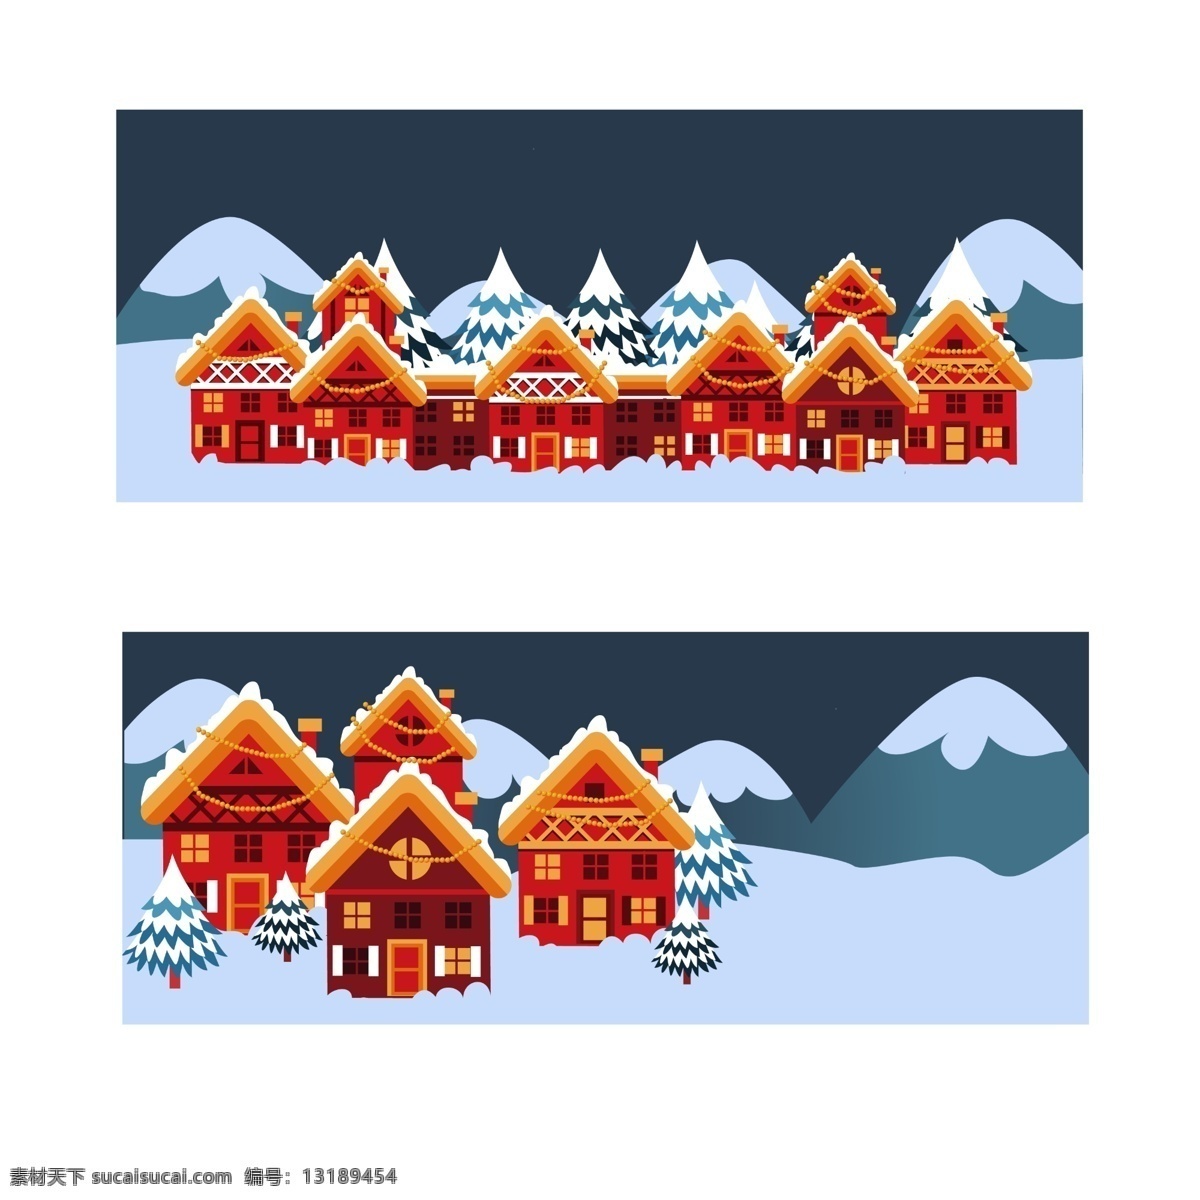 红色 房子 雪景 圣诞 海报 背景 模板 banner 海报图片 海报背景 空白背景 广告背景 轮播图背景